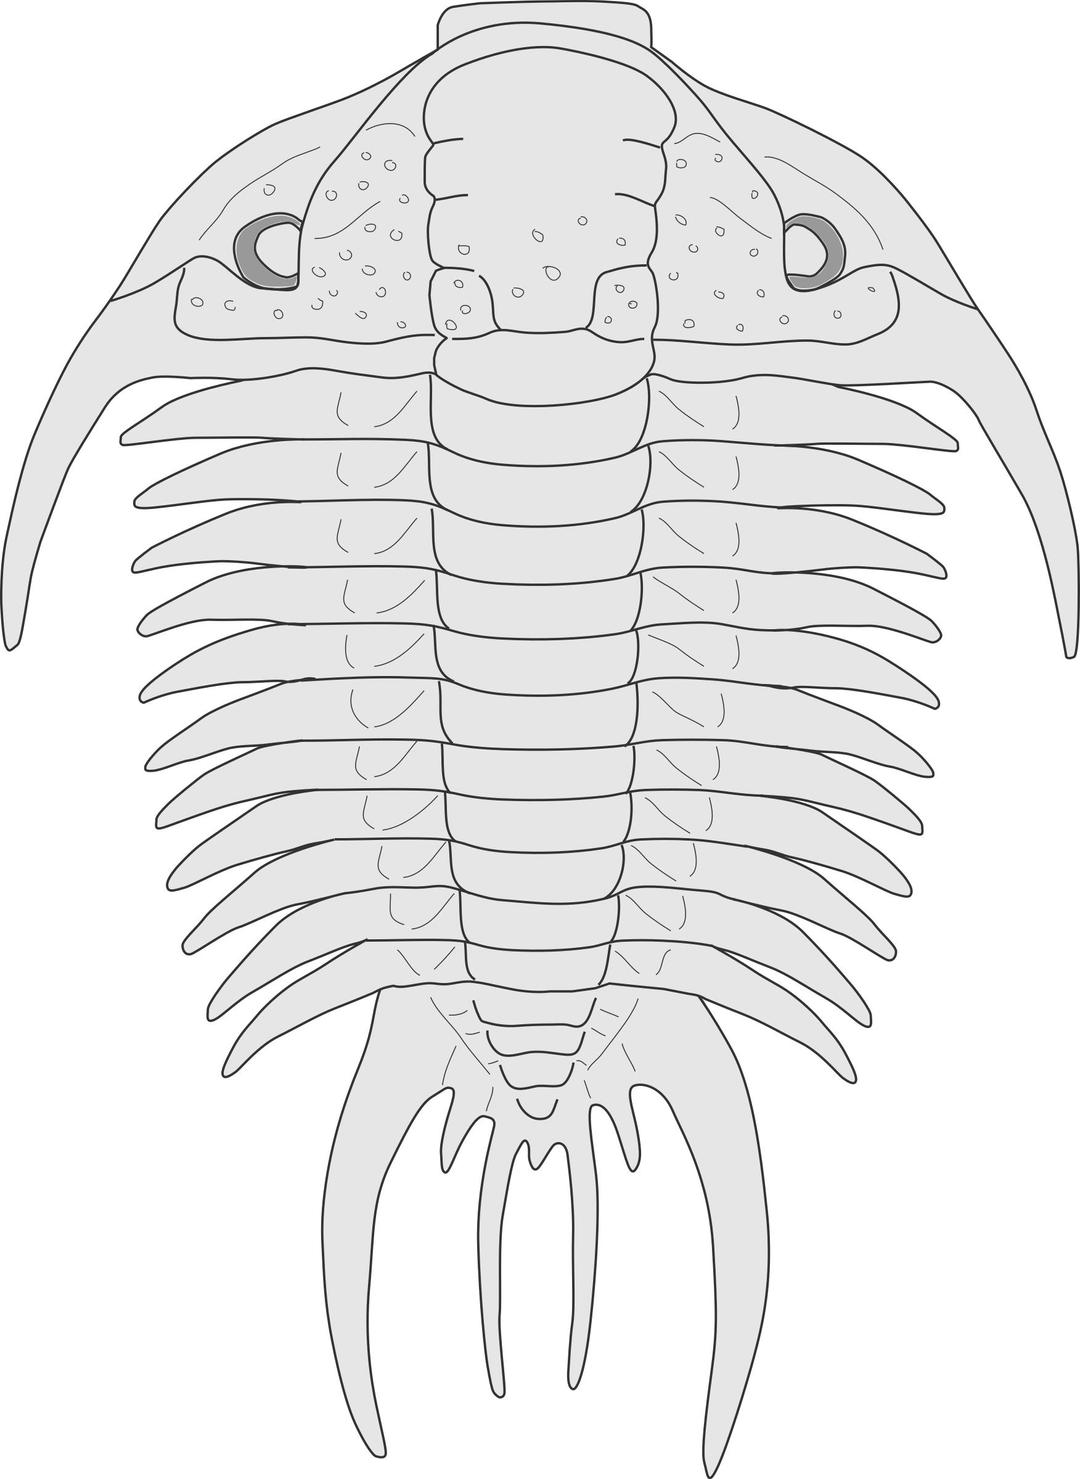 Trilobite - Paraceraurus png transparent